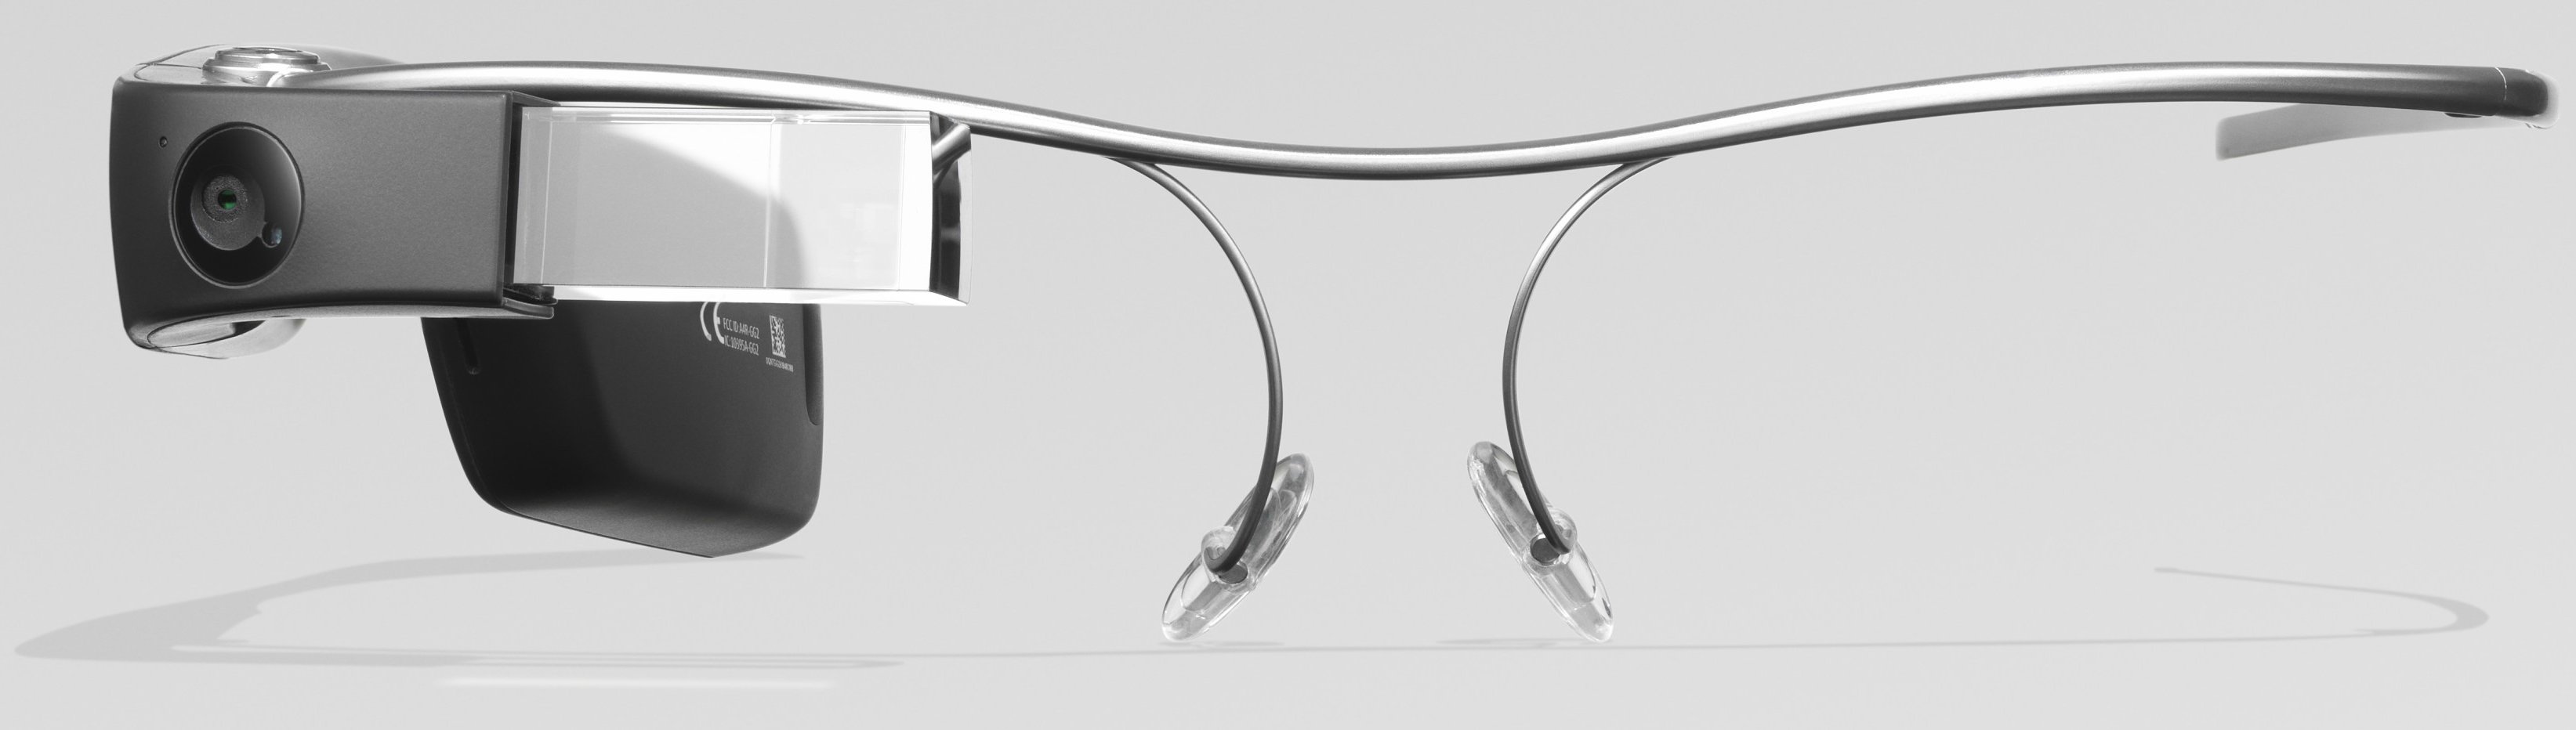 Google Glass 2 Kurumsal Sürümü camsız ve çerçevesiz ön tarafı